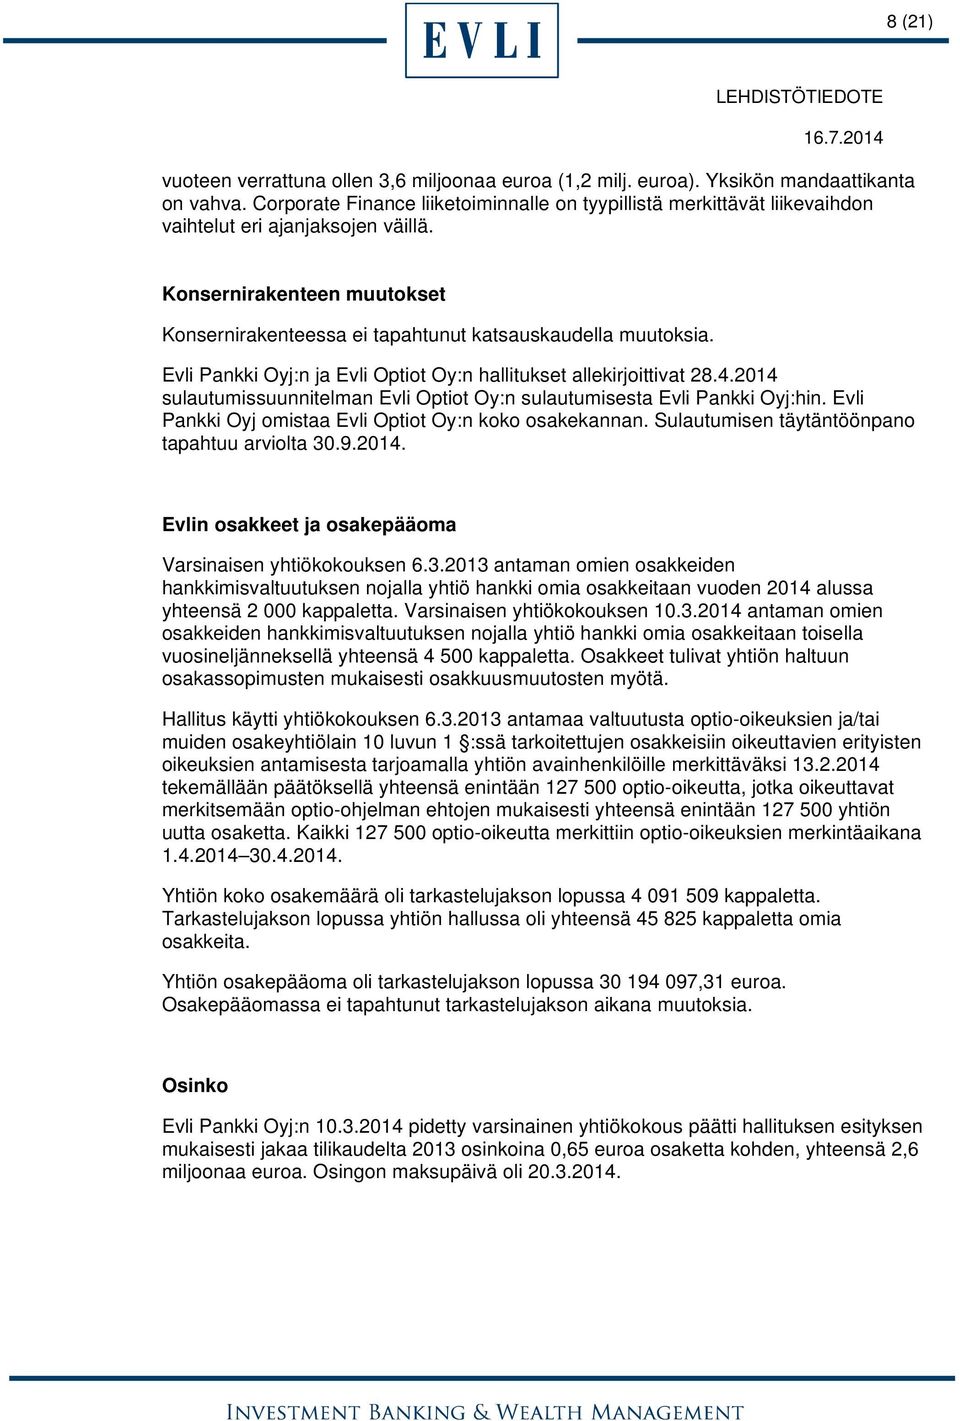 Evli Pankki Oyj:n ja Evli Optiot Oy:n hallitukset allekirjoittivat 28.4.2014 sulautumissuunnitelman Evli Optiot Oy:n sulautumisesta Evli Pankki Oyj:hin.